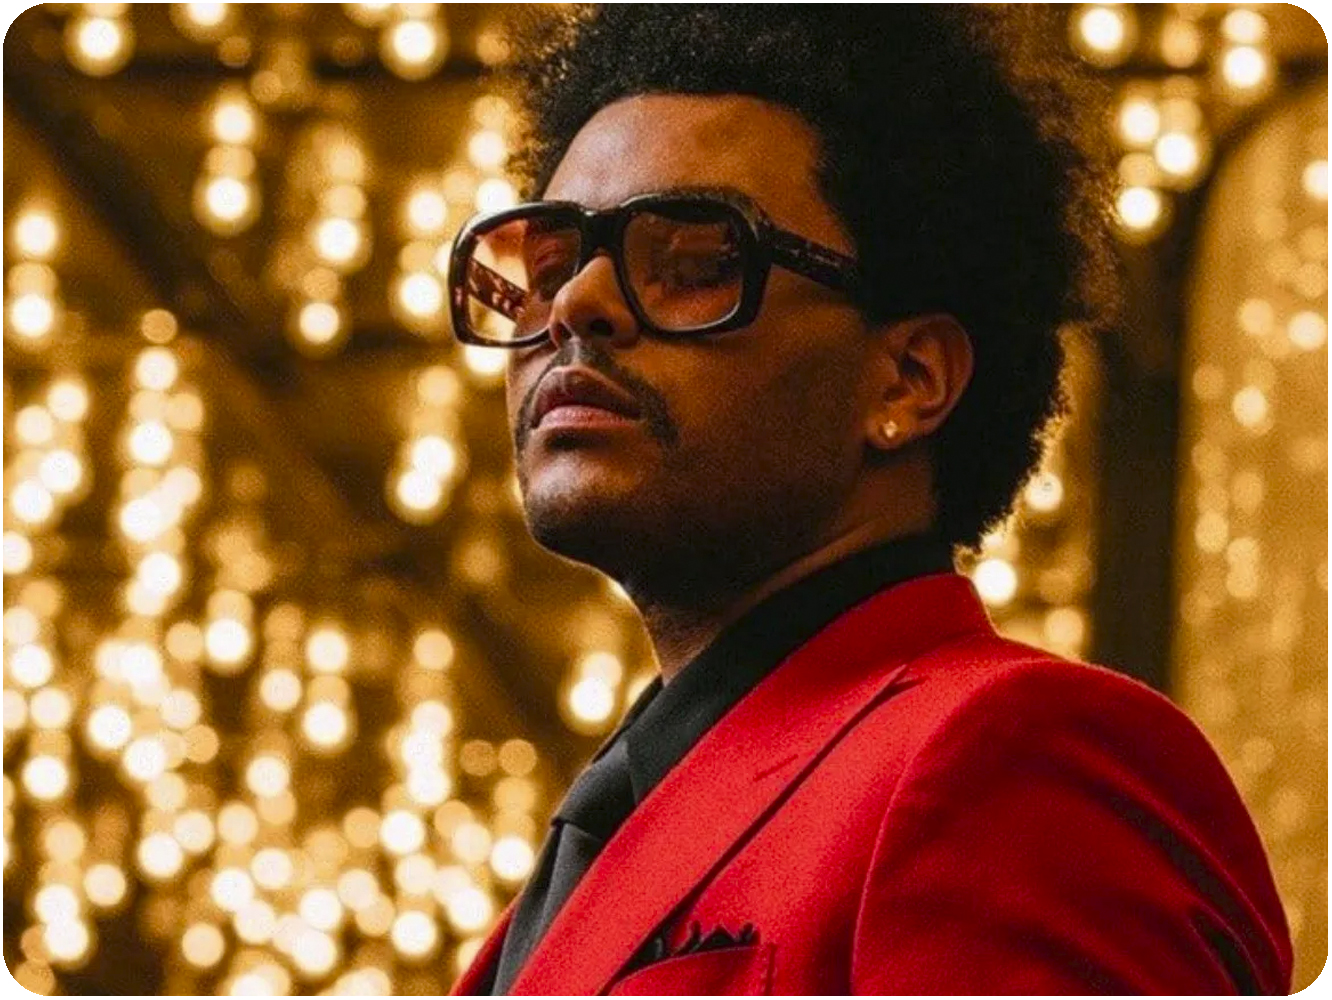  Pitchfork castiga a The Weeknd en álbumes y sorprende con su canción del año al elegir lo mejor de 2020